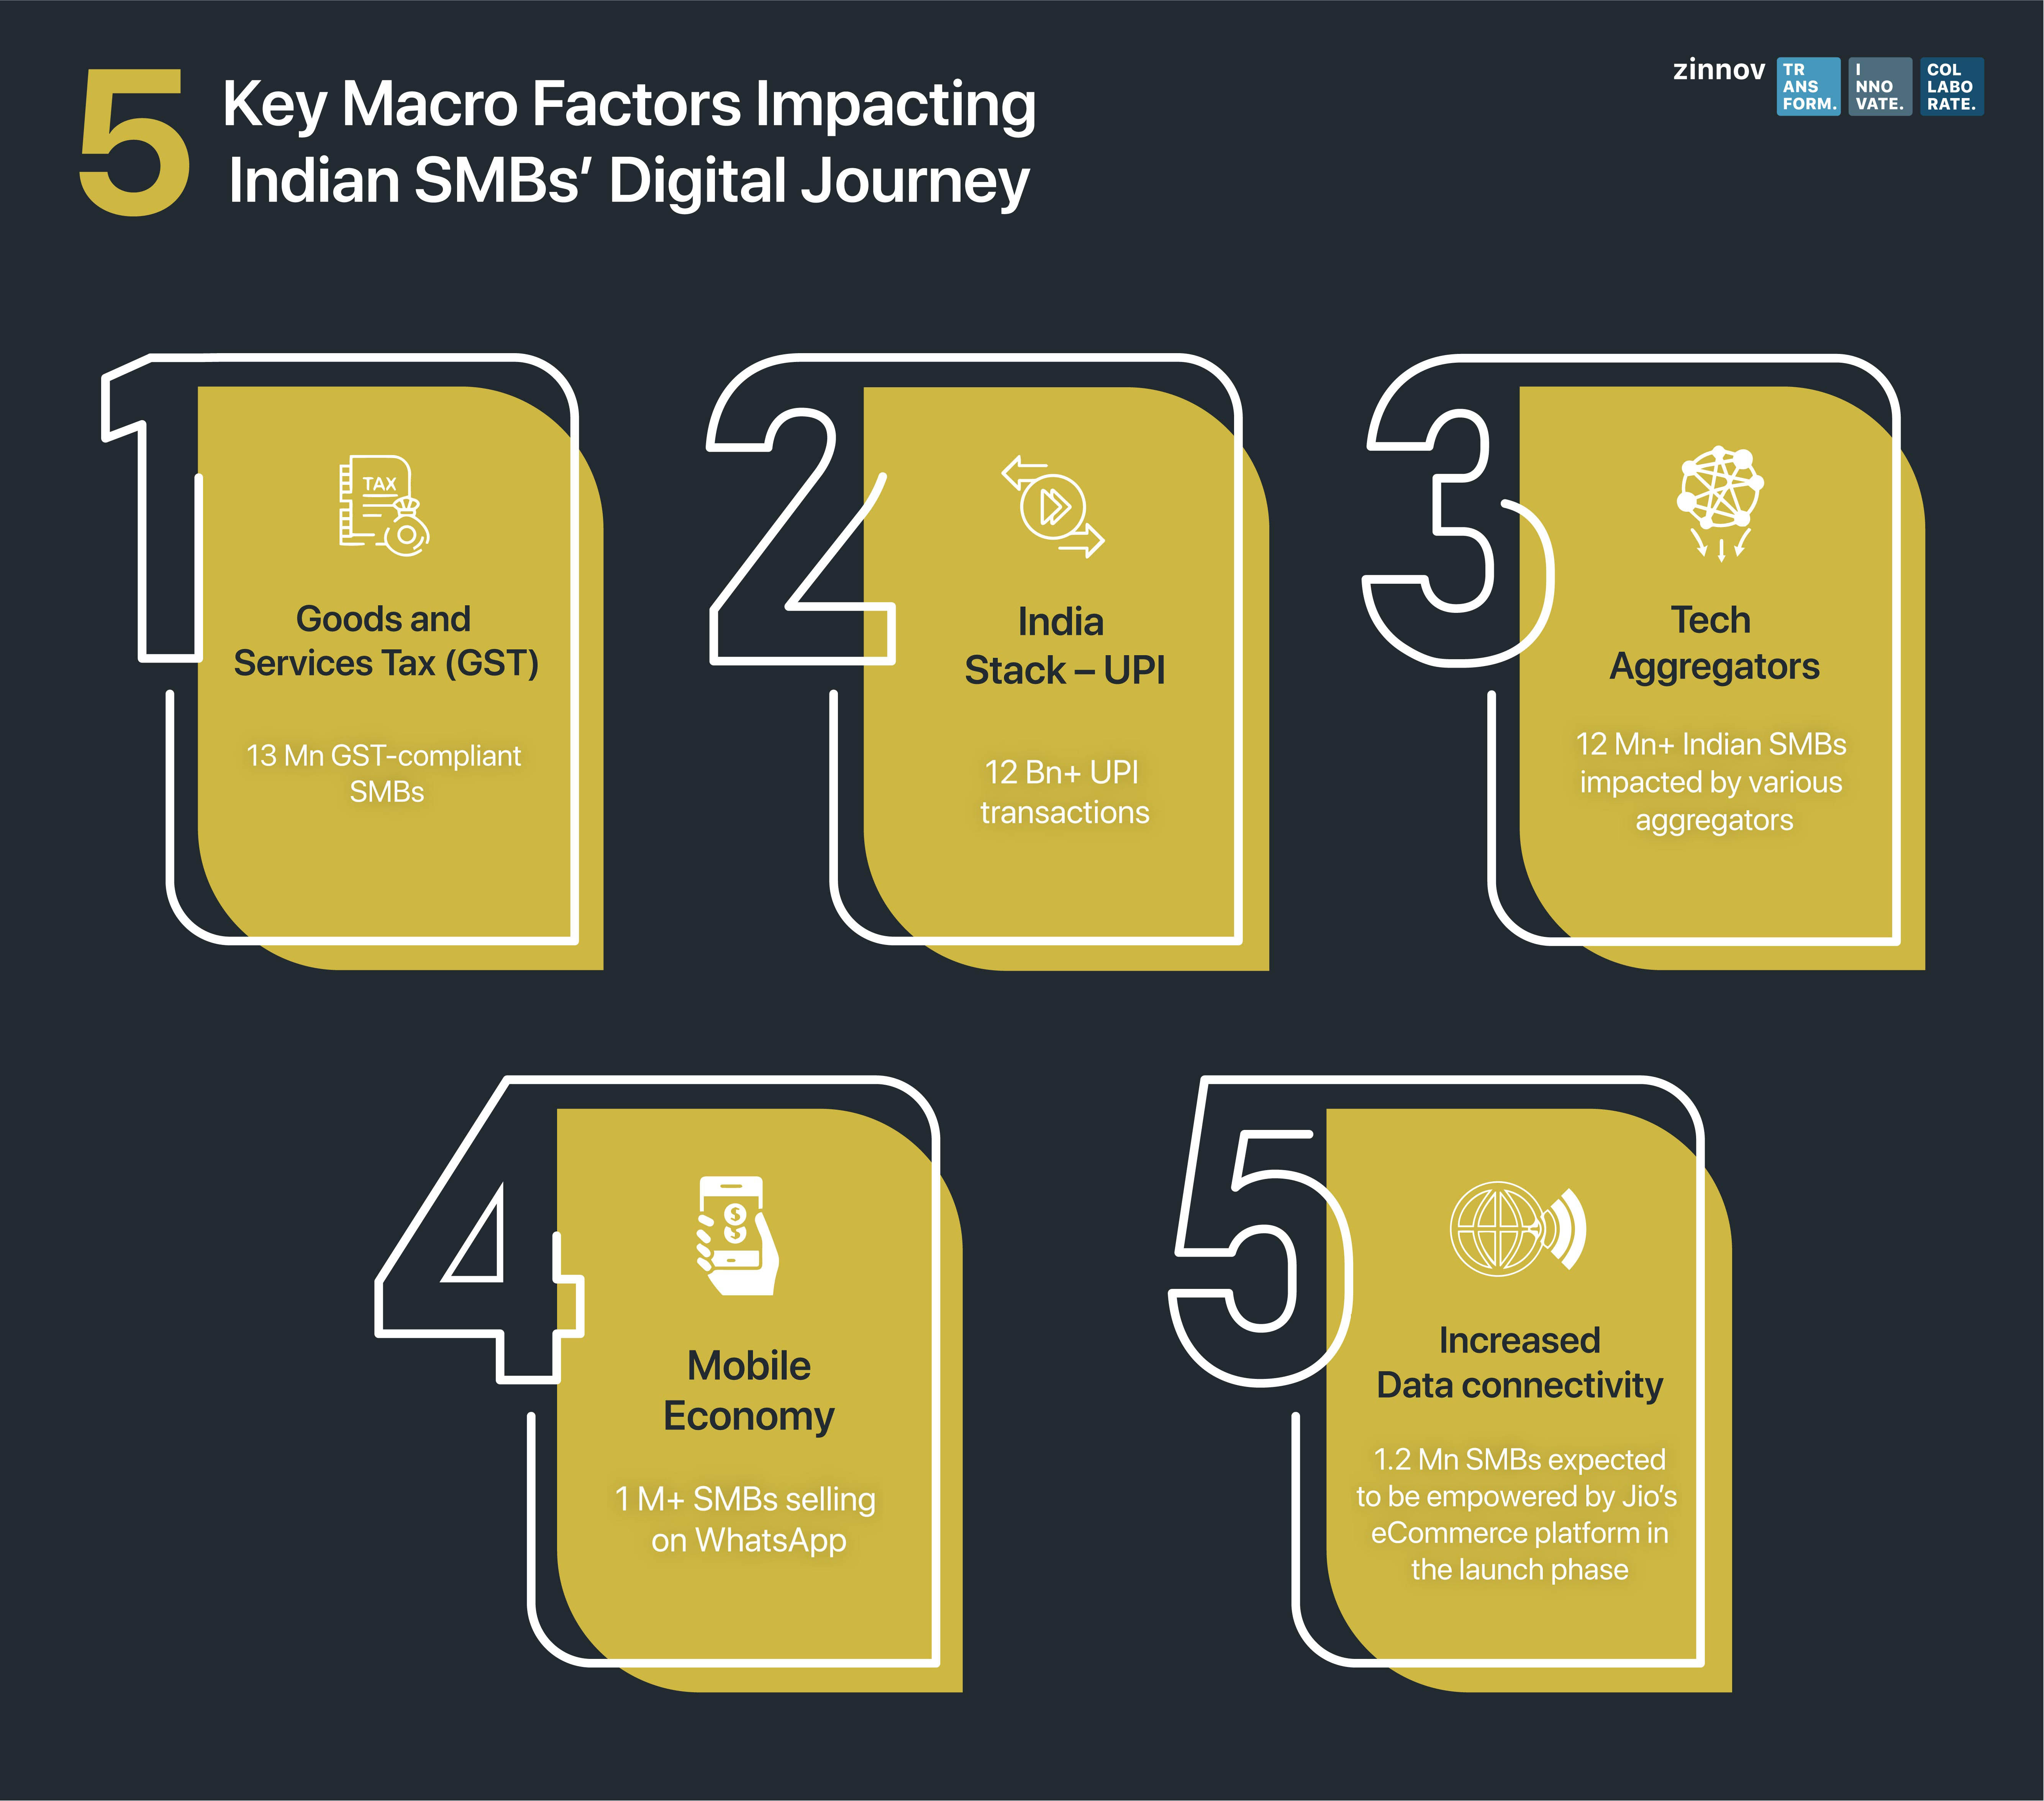 Macro factors impacting Indian SMBs’ digital journey